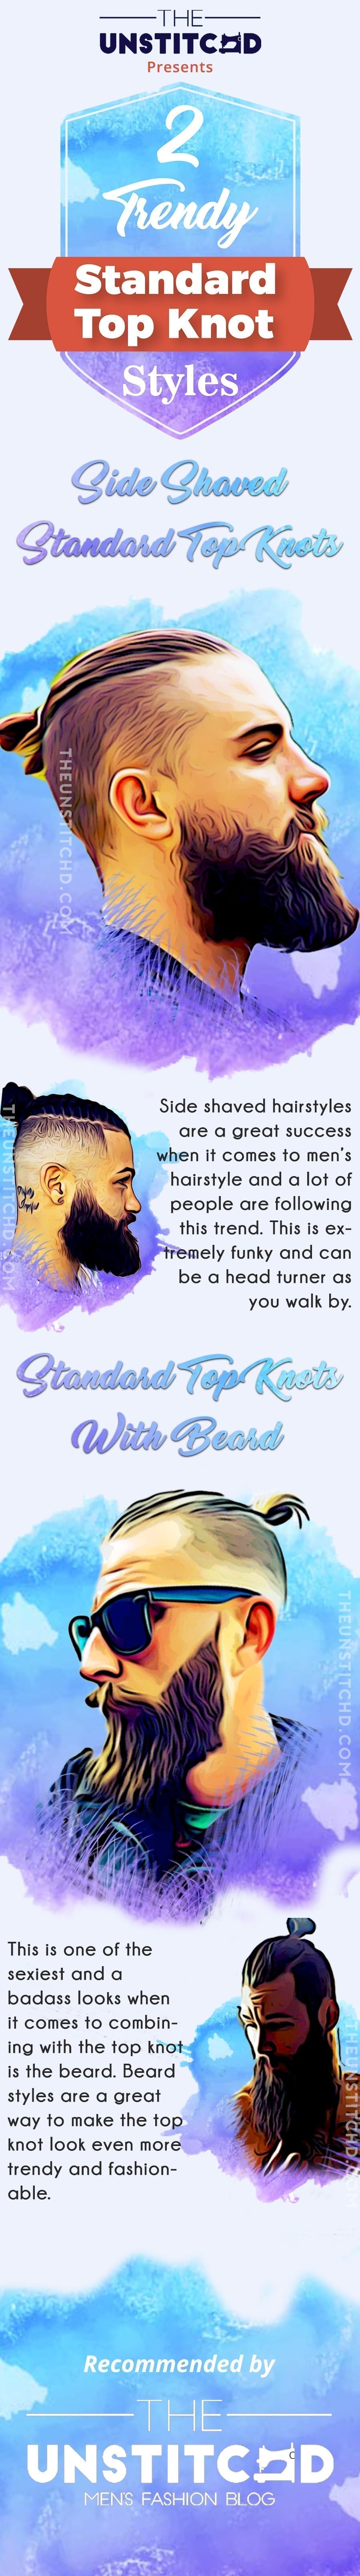 standard-top-knot-info